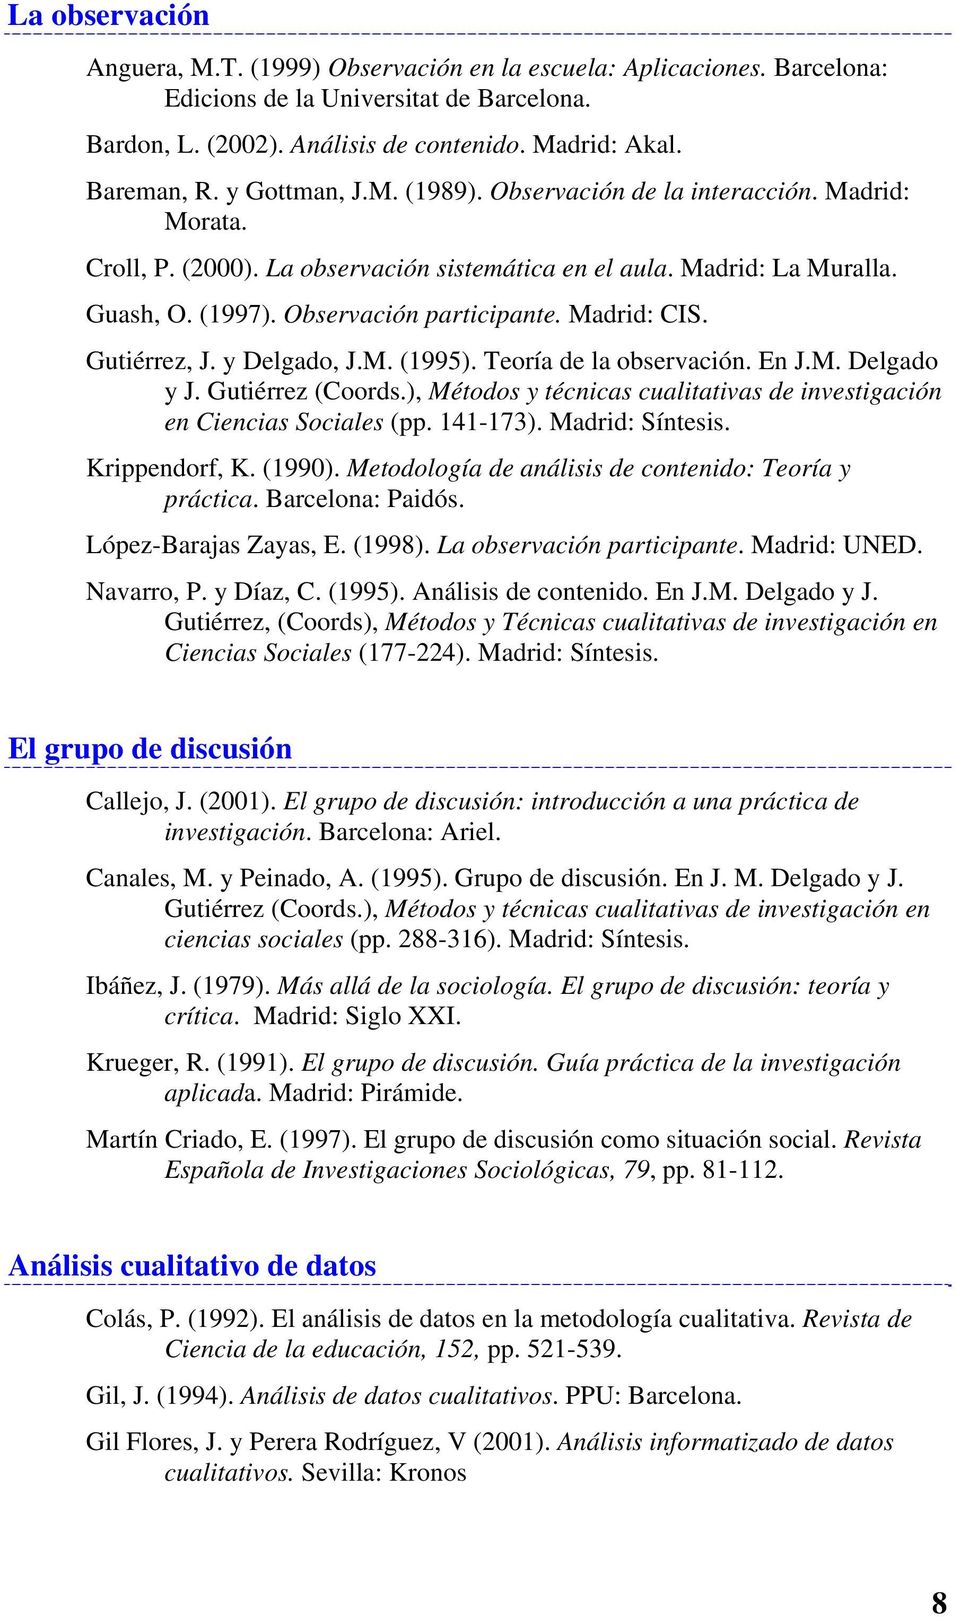 Madrid: CIS. Gutiérrez, J. y Delgado, J.M. (1995). Teoría de la observación. En J.M. Delgado y J. Gutiérrez (Coords.), Métodos y técnicas cualitativas de investigación en Ciencias Sociales (pp.